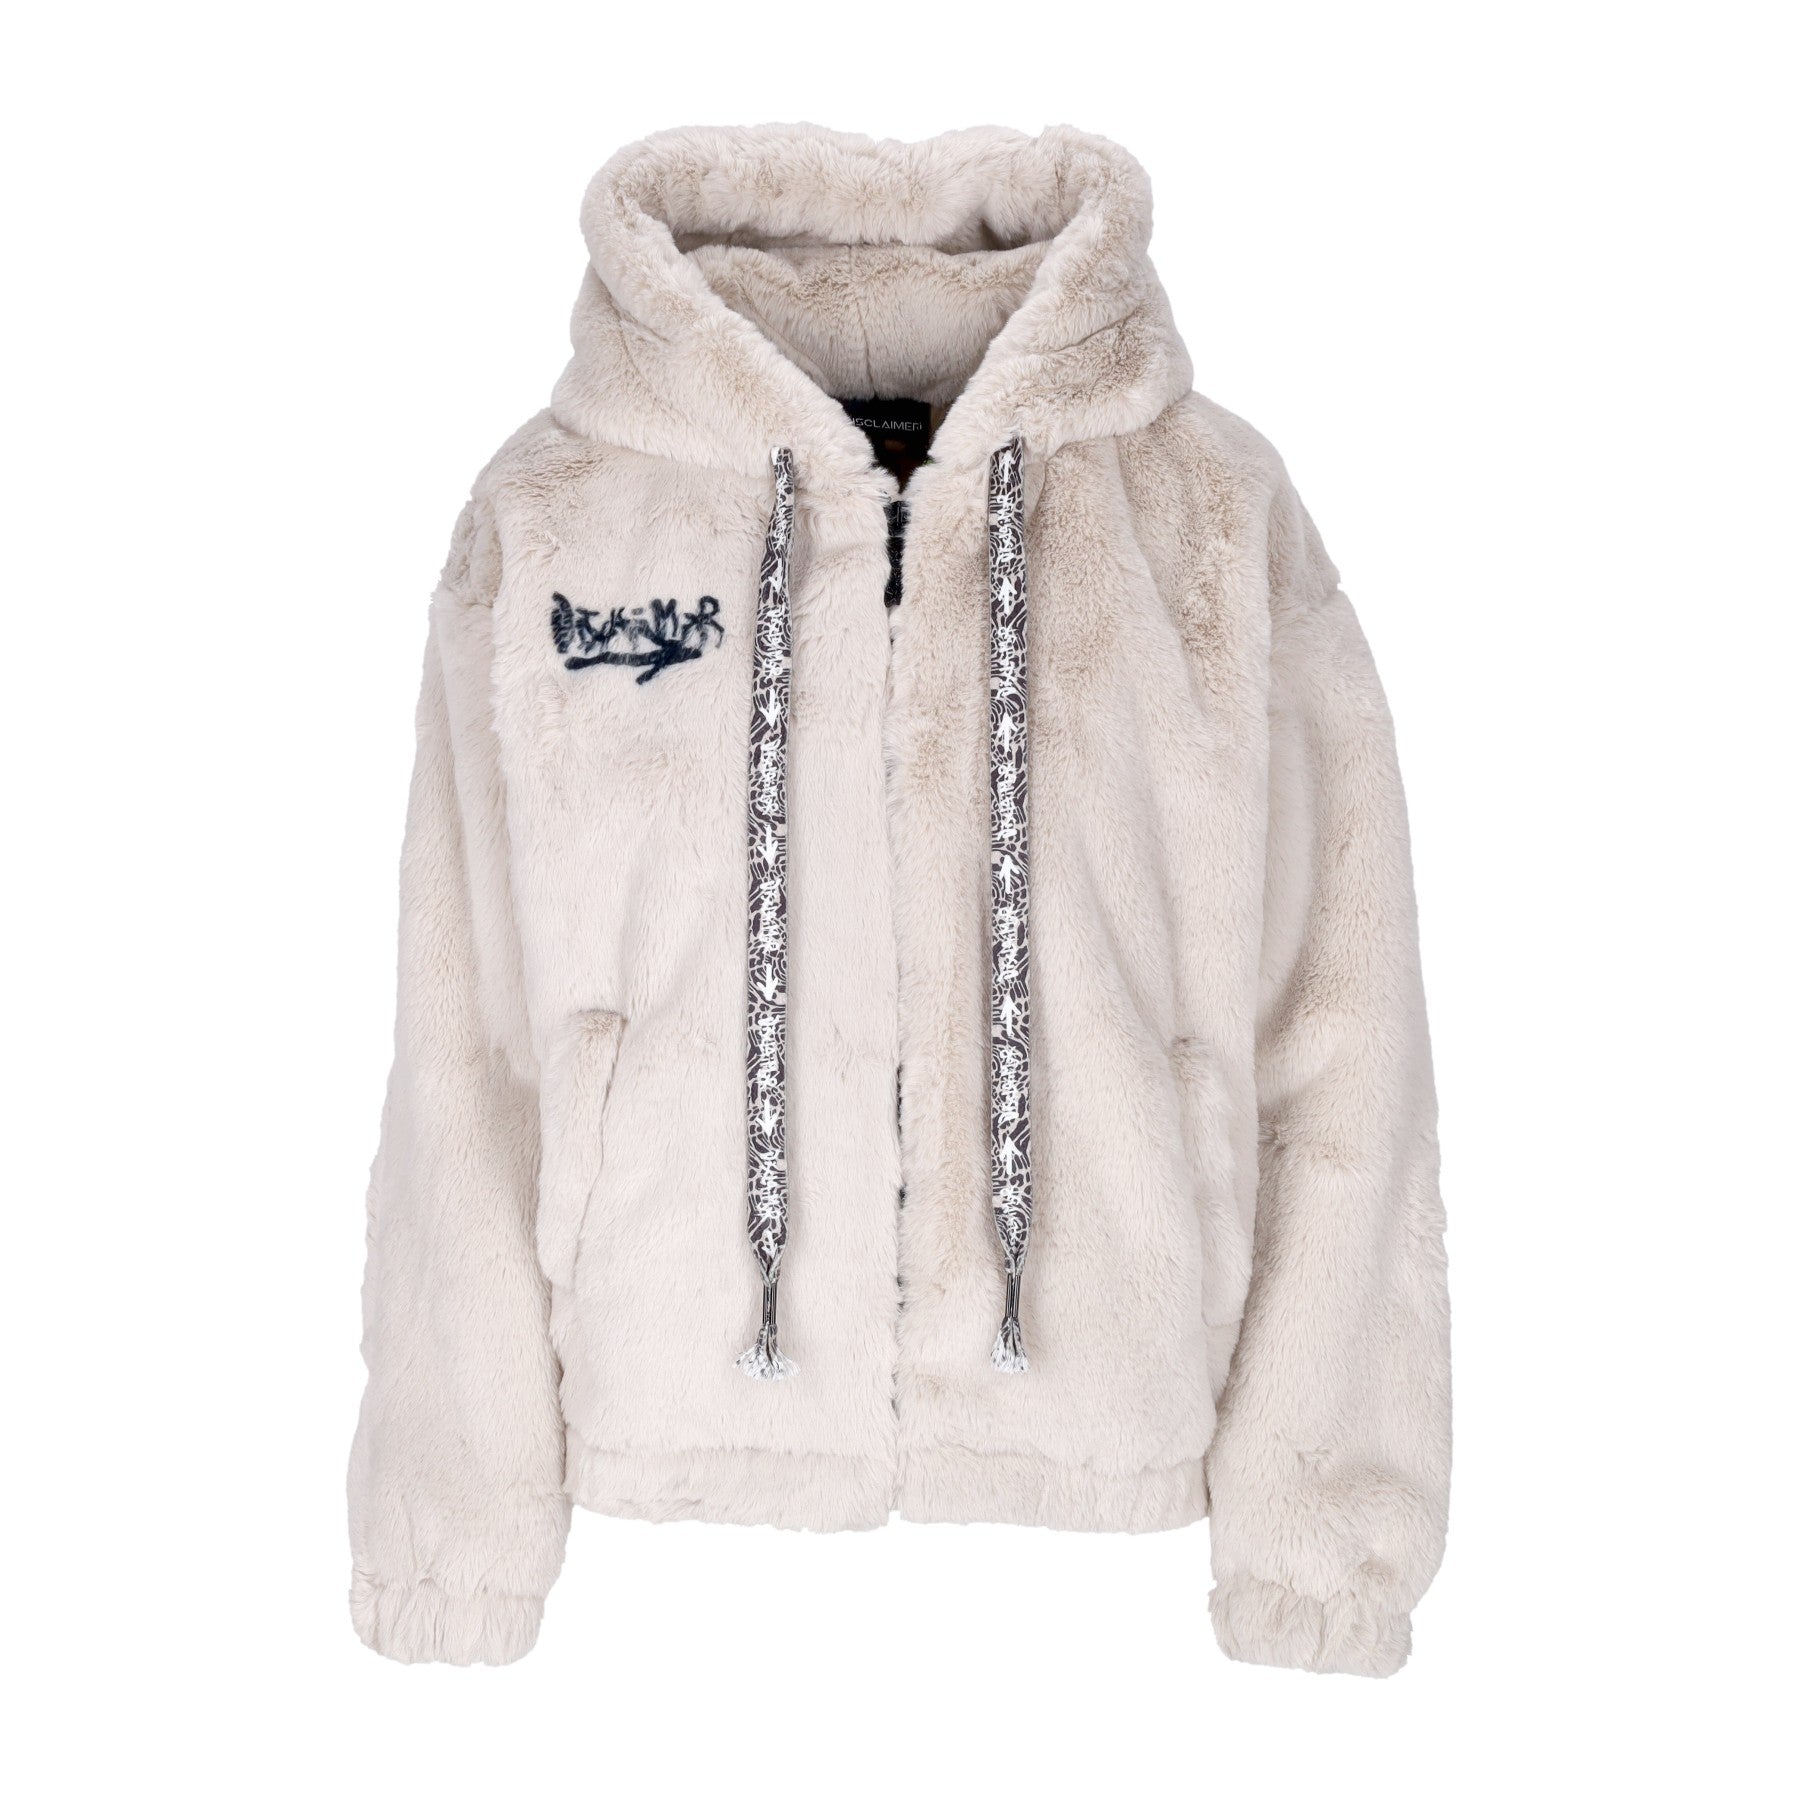 Pelliccia Donna Eco-fur Jacket Off White